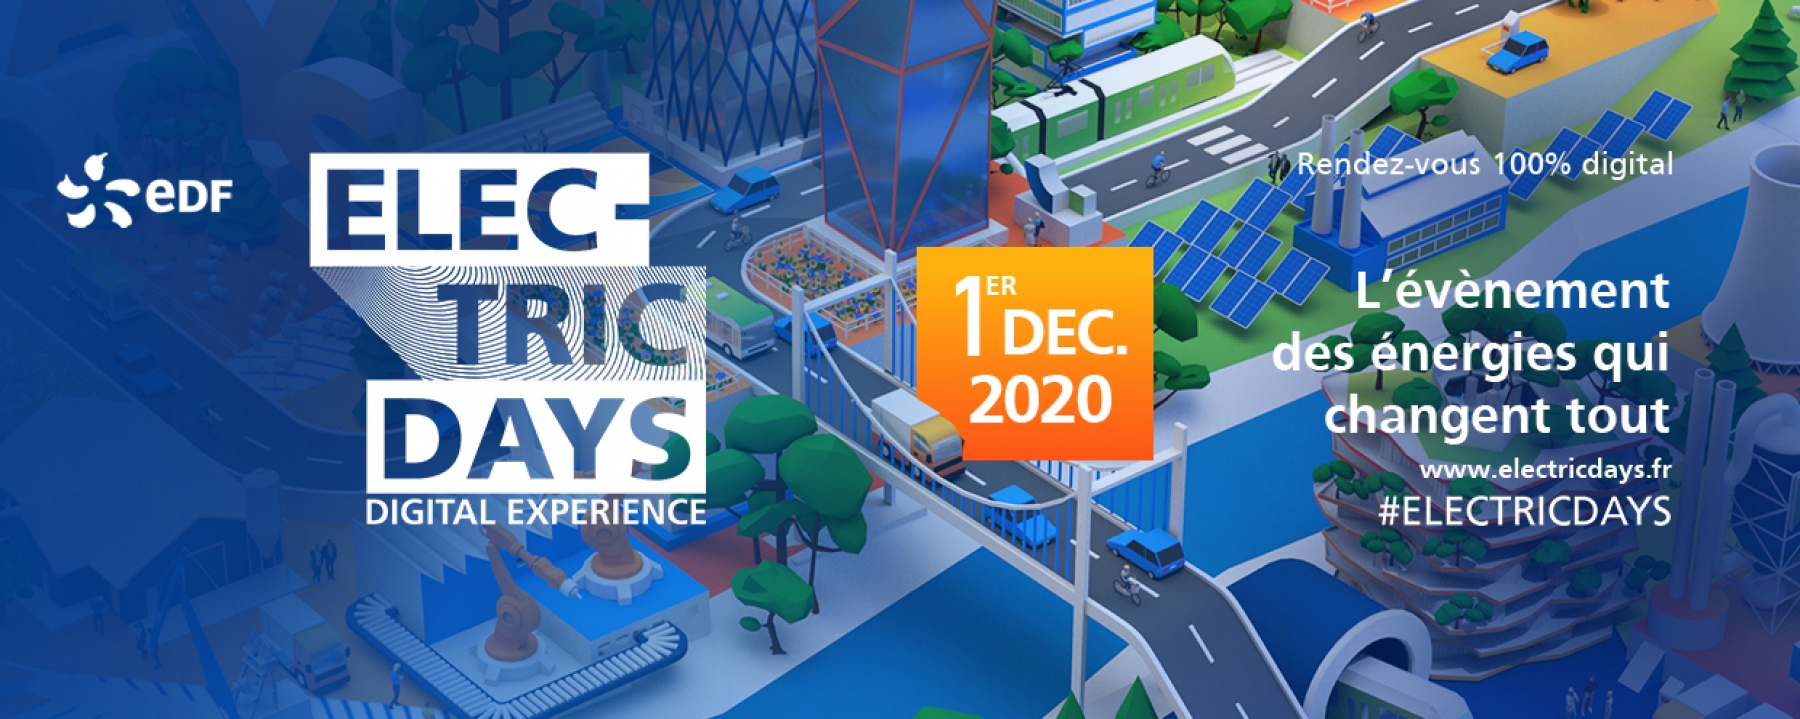 Electric Days, organisé par EDF le 1er décembre 2020